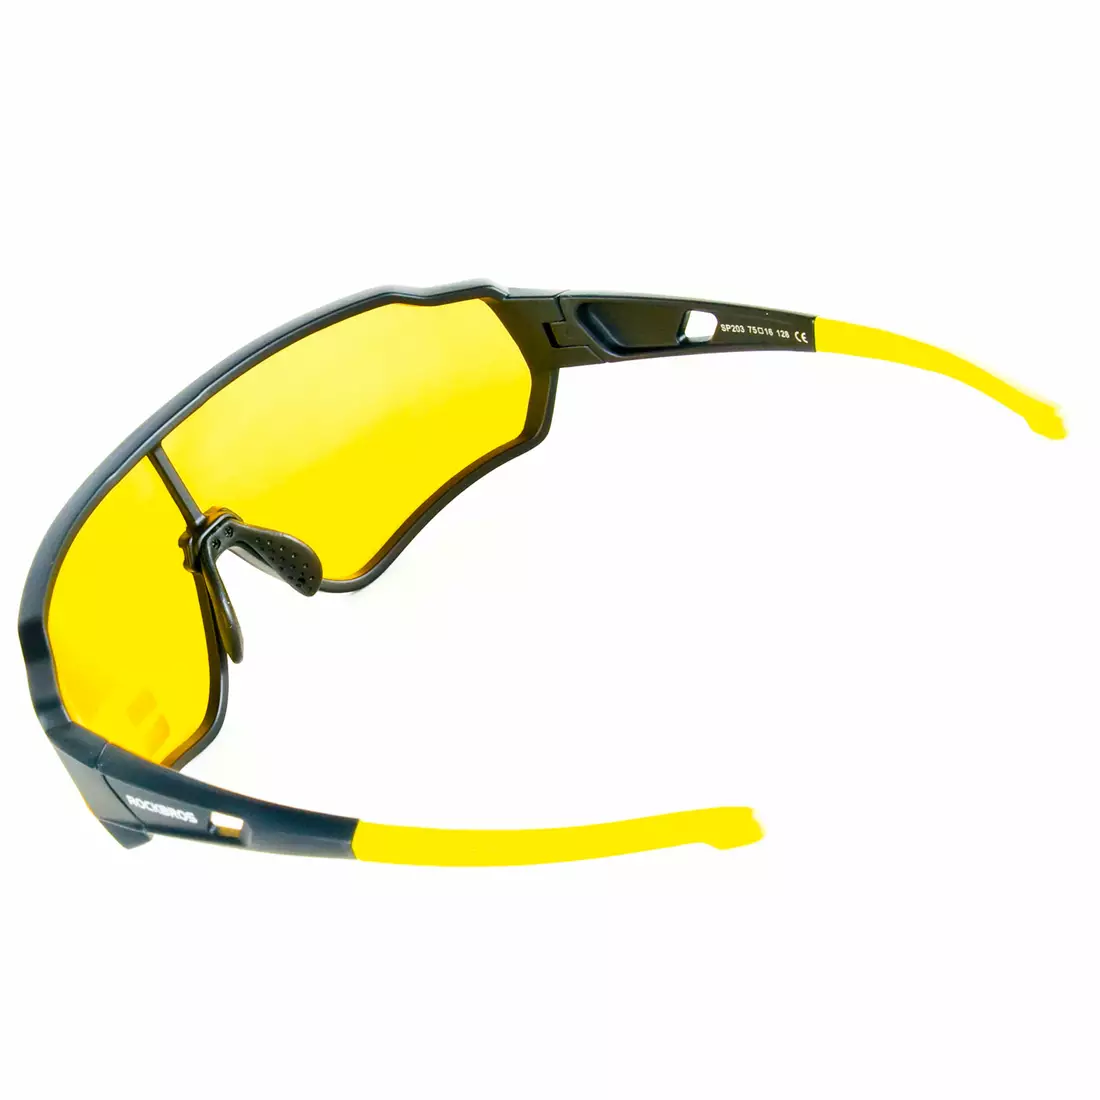 Rockbros 10164 Polarizované športové cyklistické okuliare, čierne a žlté